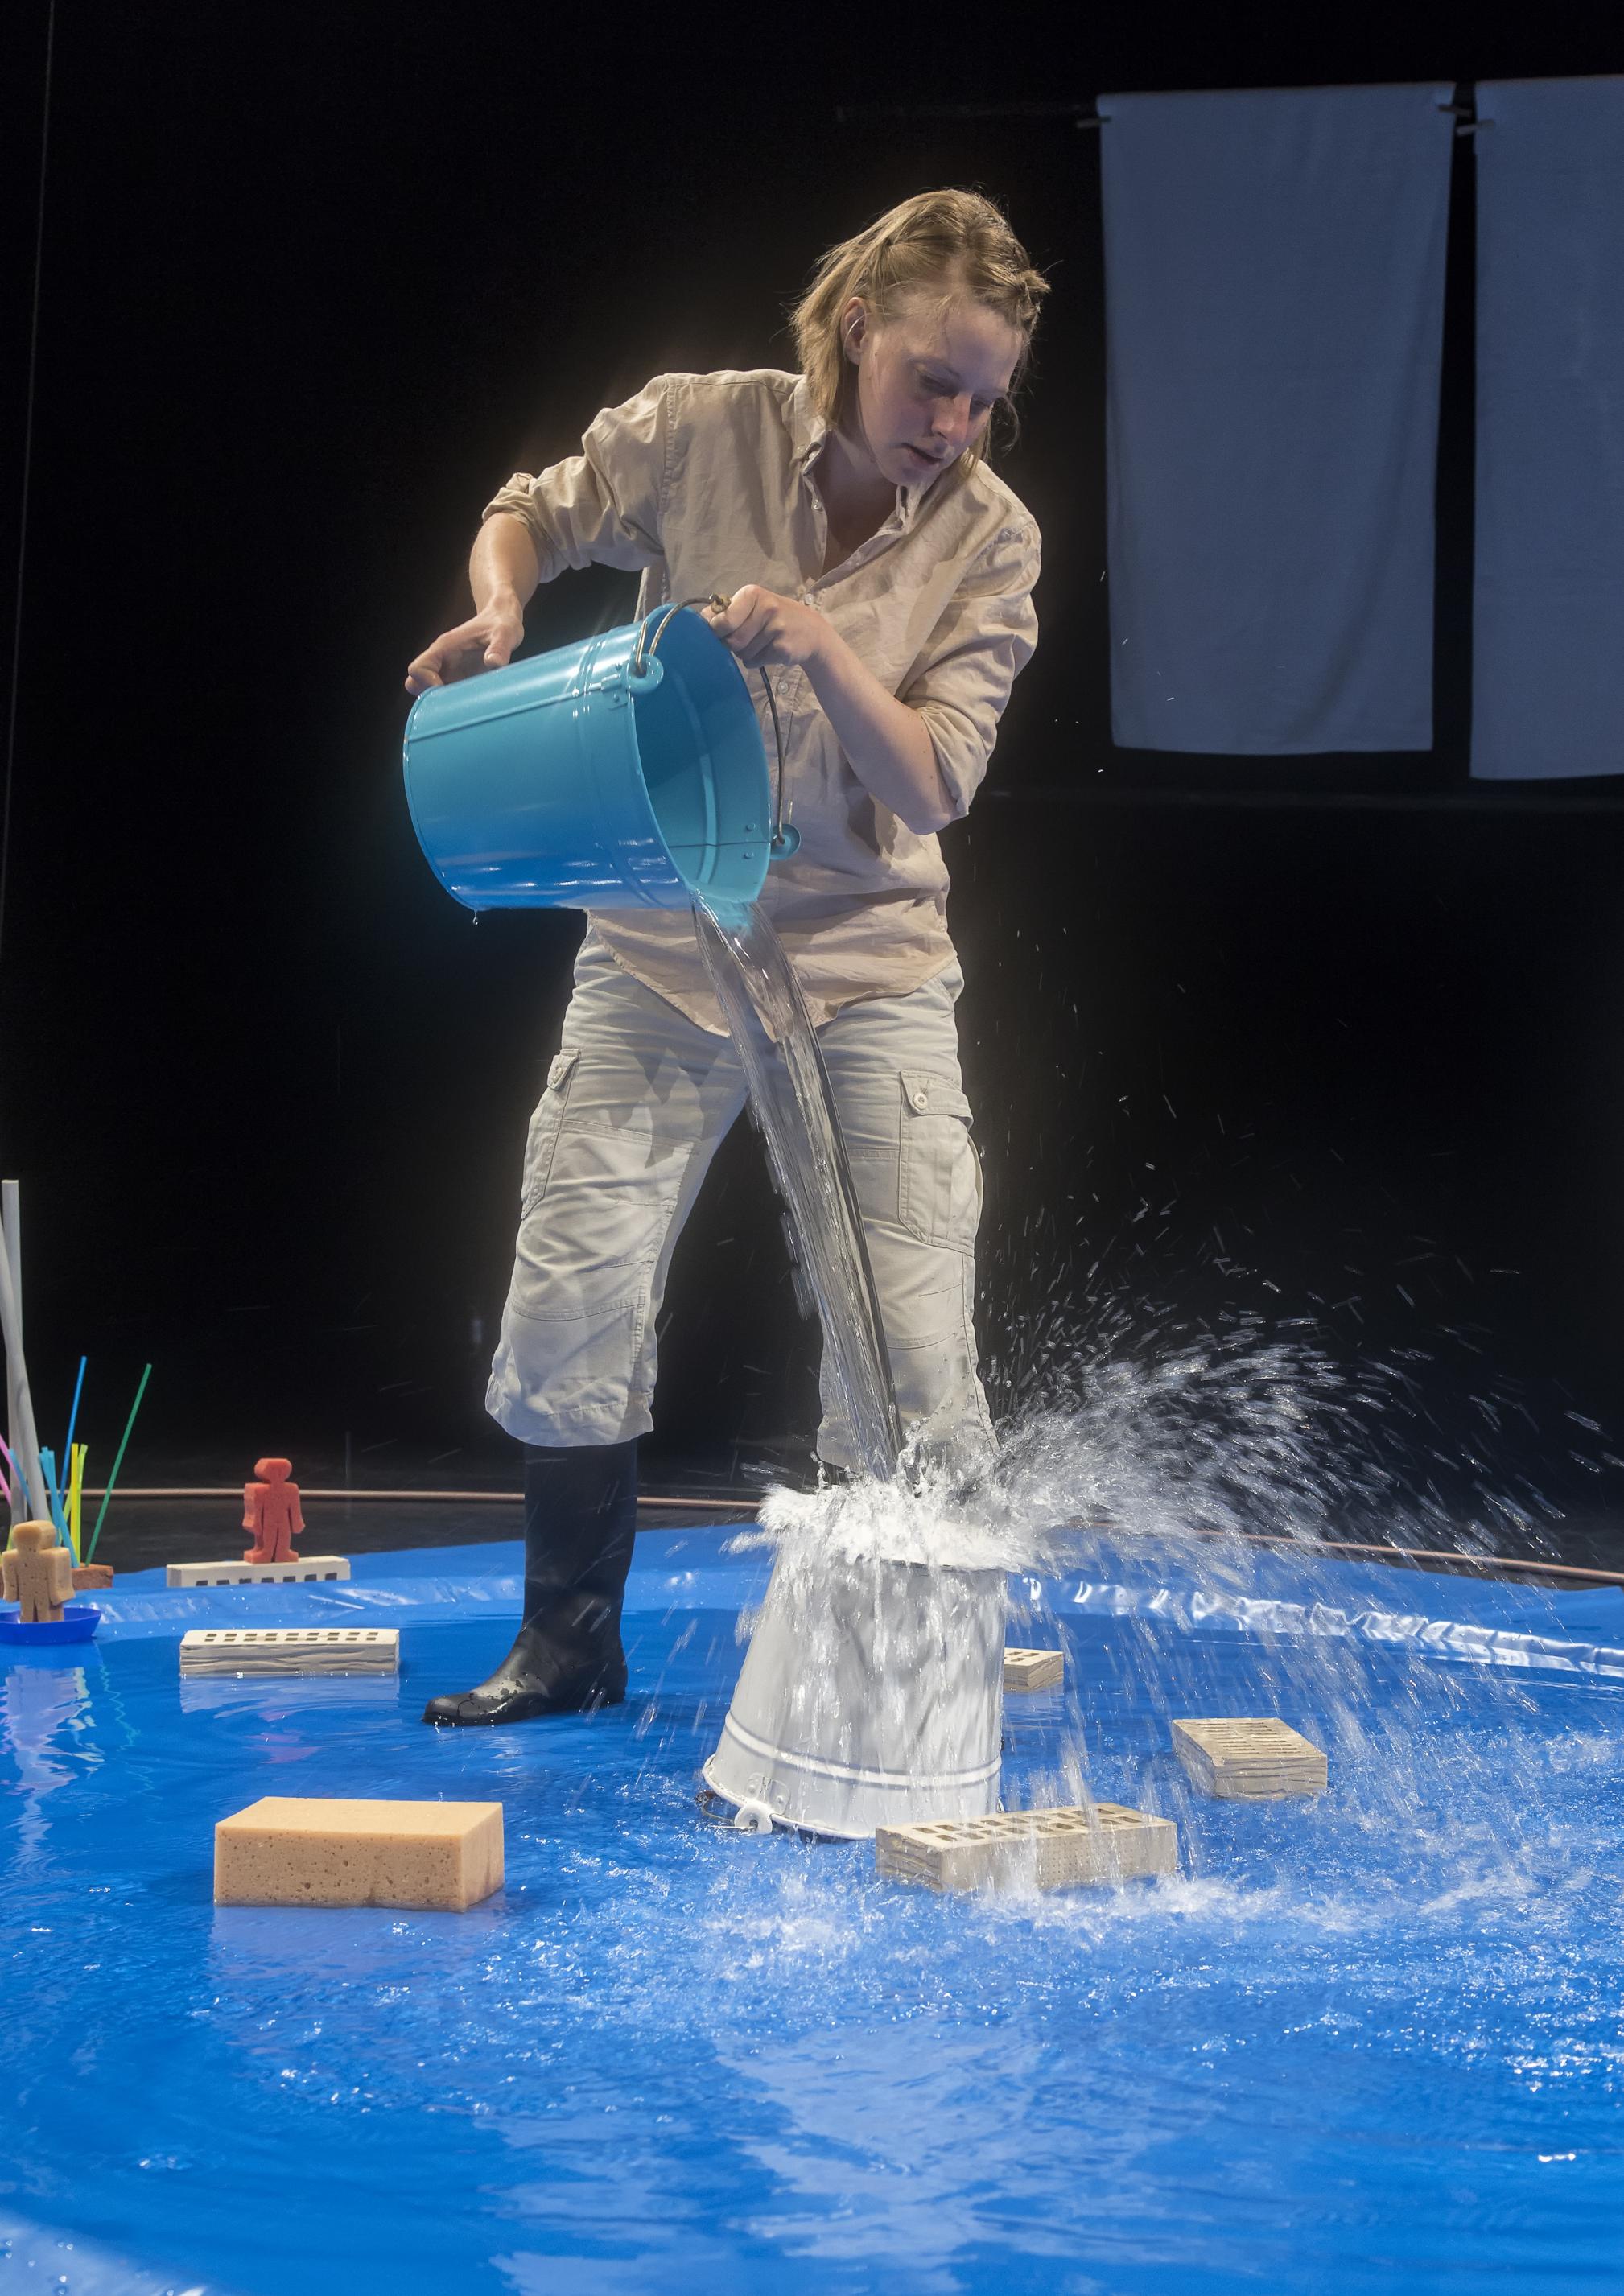 Eine Frau steht in Gummistiefeln in einem kleinen, künstlichen Teich auf der Bühne und lässt Wasser aus einem blauen Eimer auf den Boden eines umgedrehten Eimers fallen. Schwungvoll spritzen die Tropfen wieder hoch und von dort in den Teich.